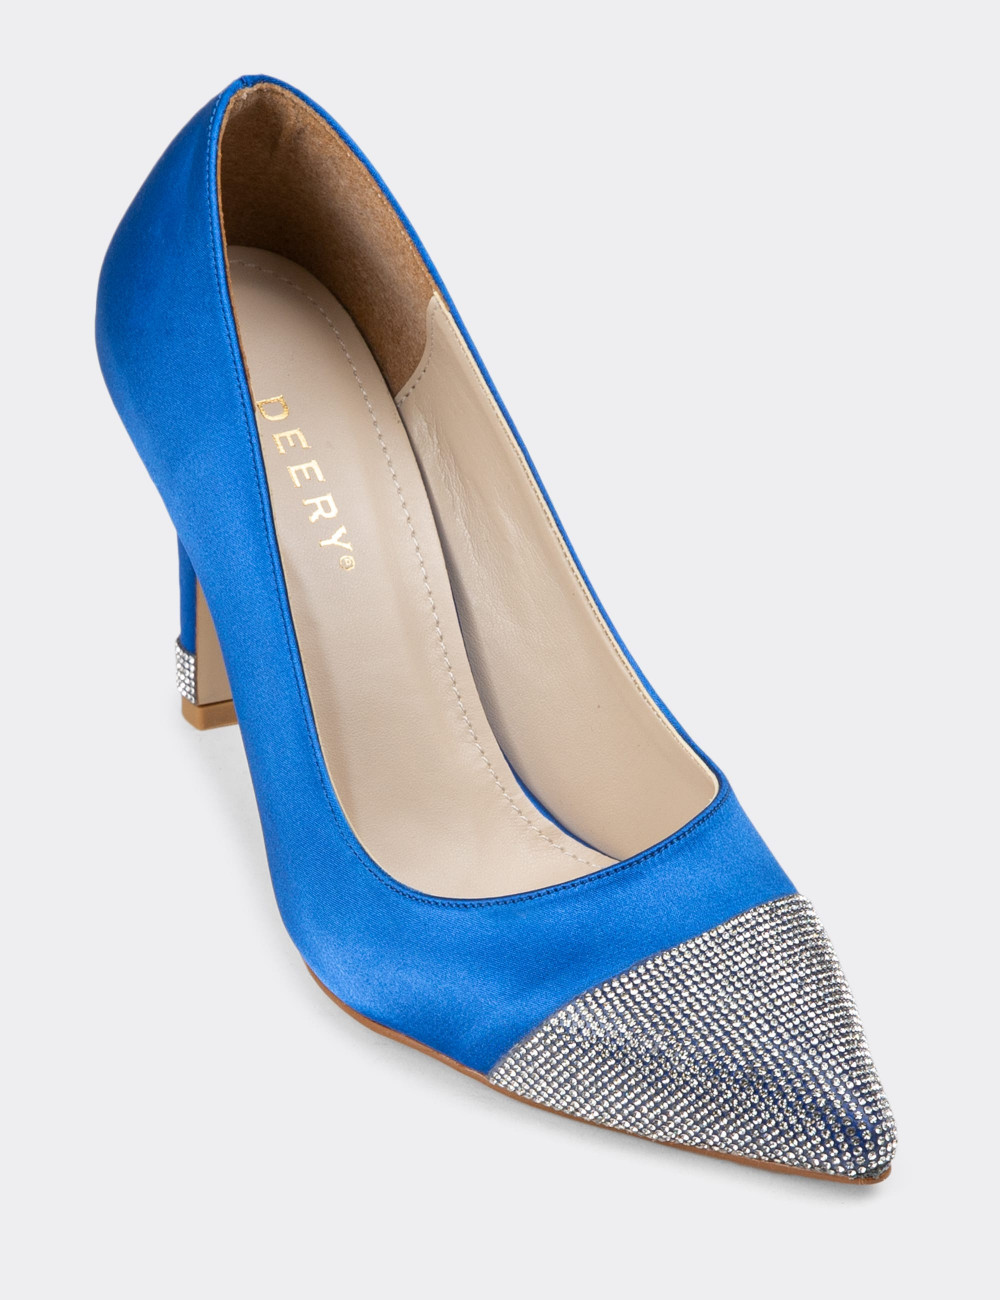 Mavi Stiletto Taşlı Kadın Topuklu Ayakkabı - K0030ZMVIM01